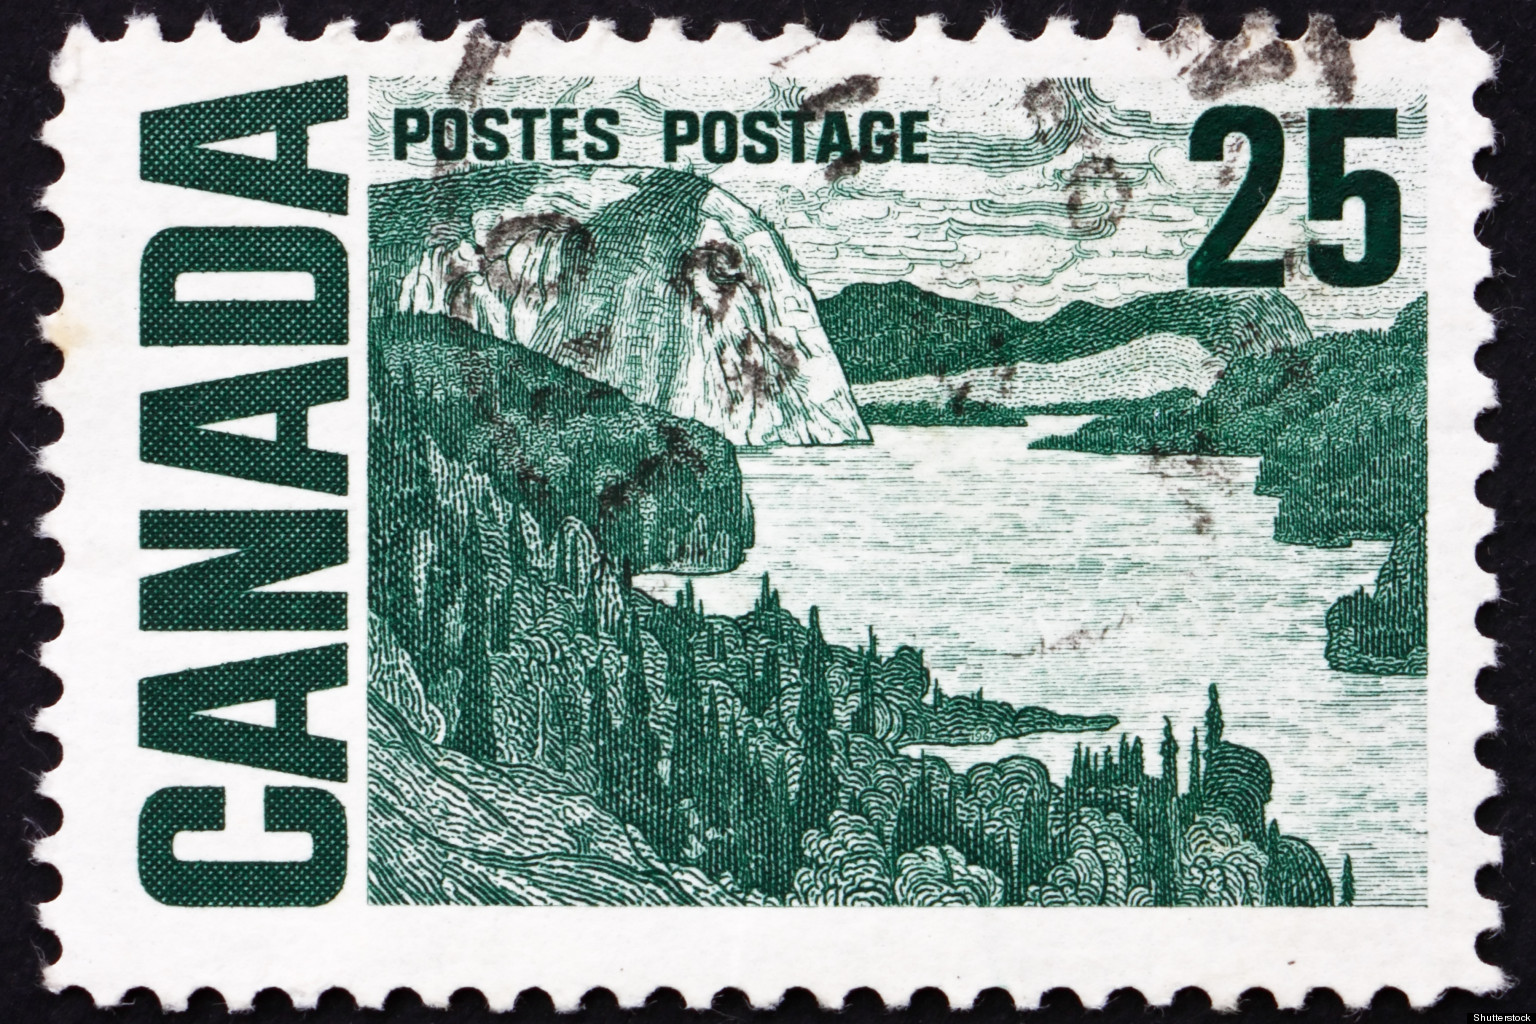 Resultado de imagen para postage stamps of canada